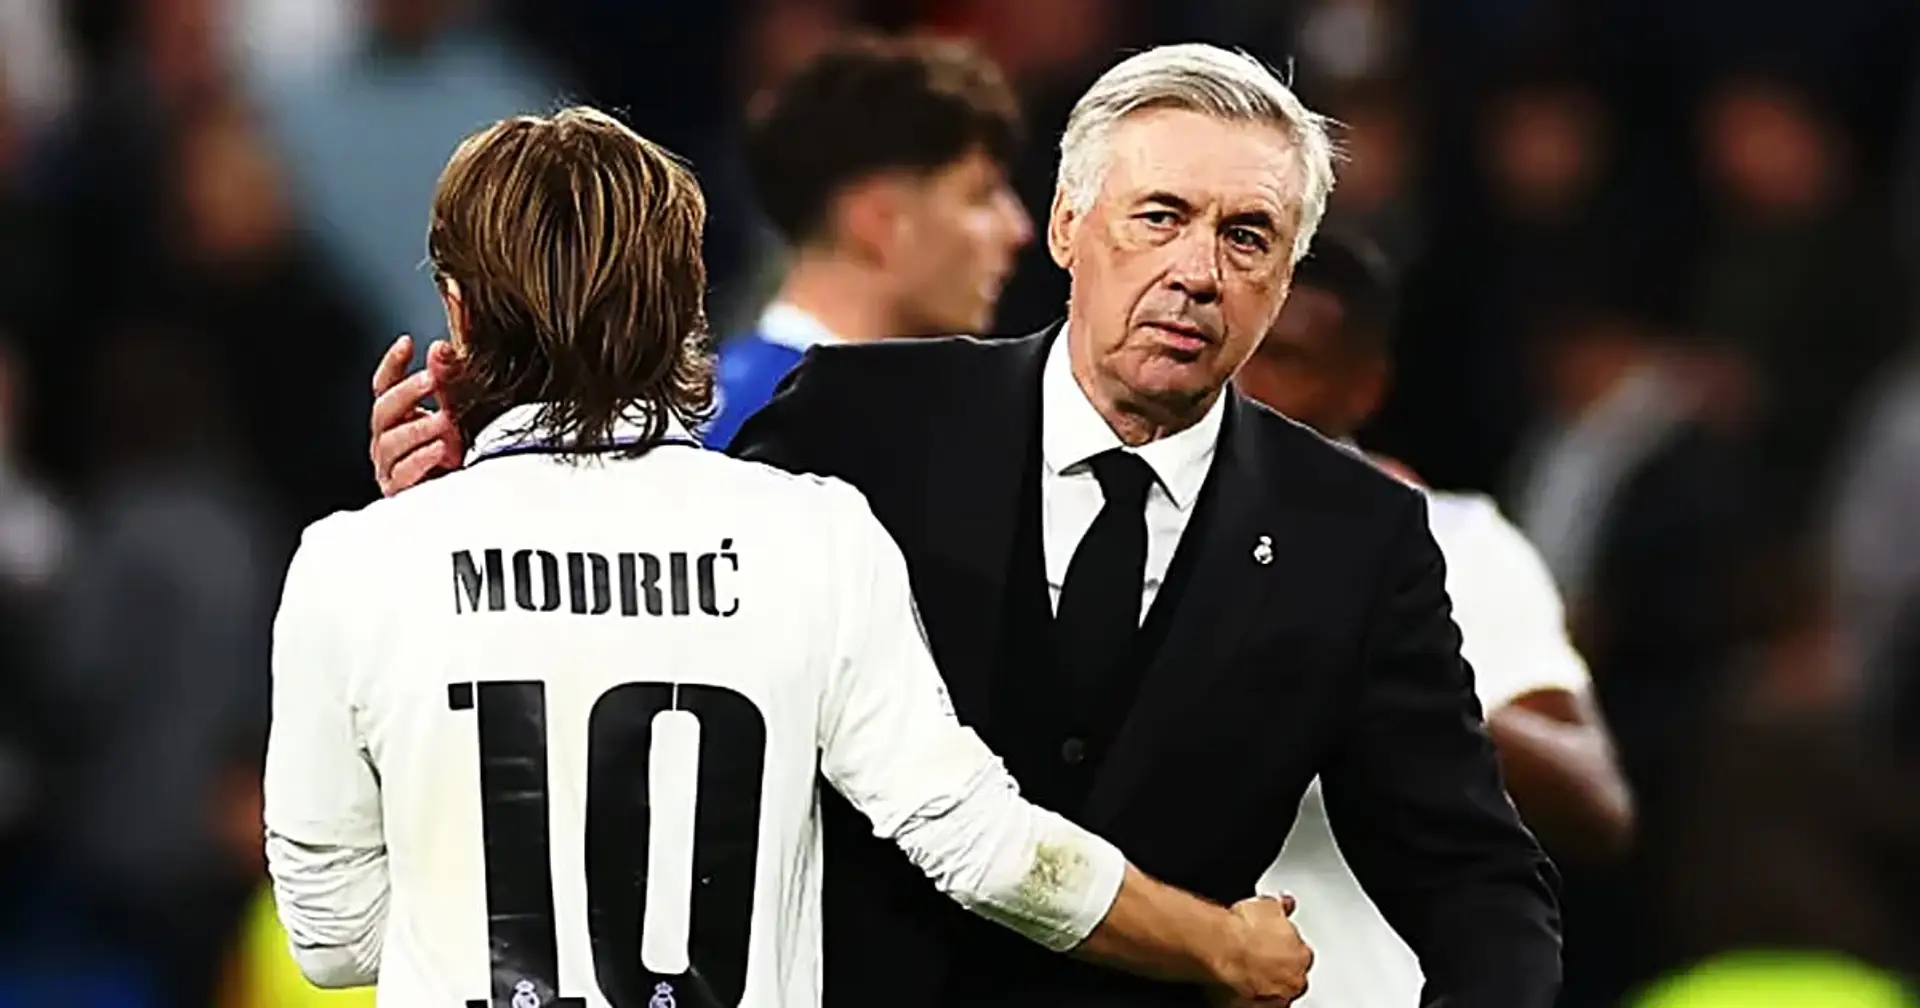 Carlo Ancelotti über Modric: "Er ist nicht glücklich. Das ist offensichtlich"